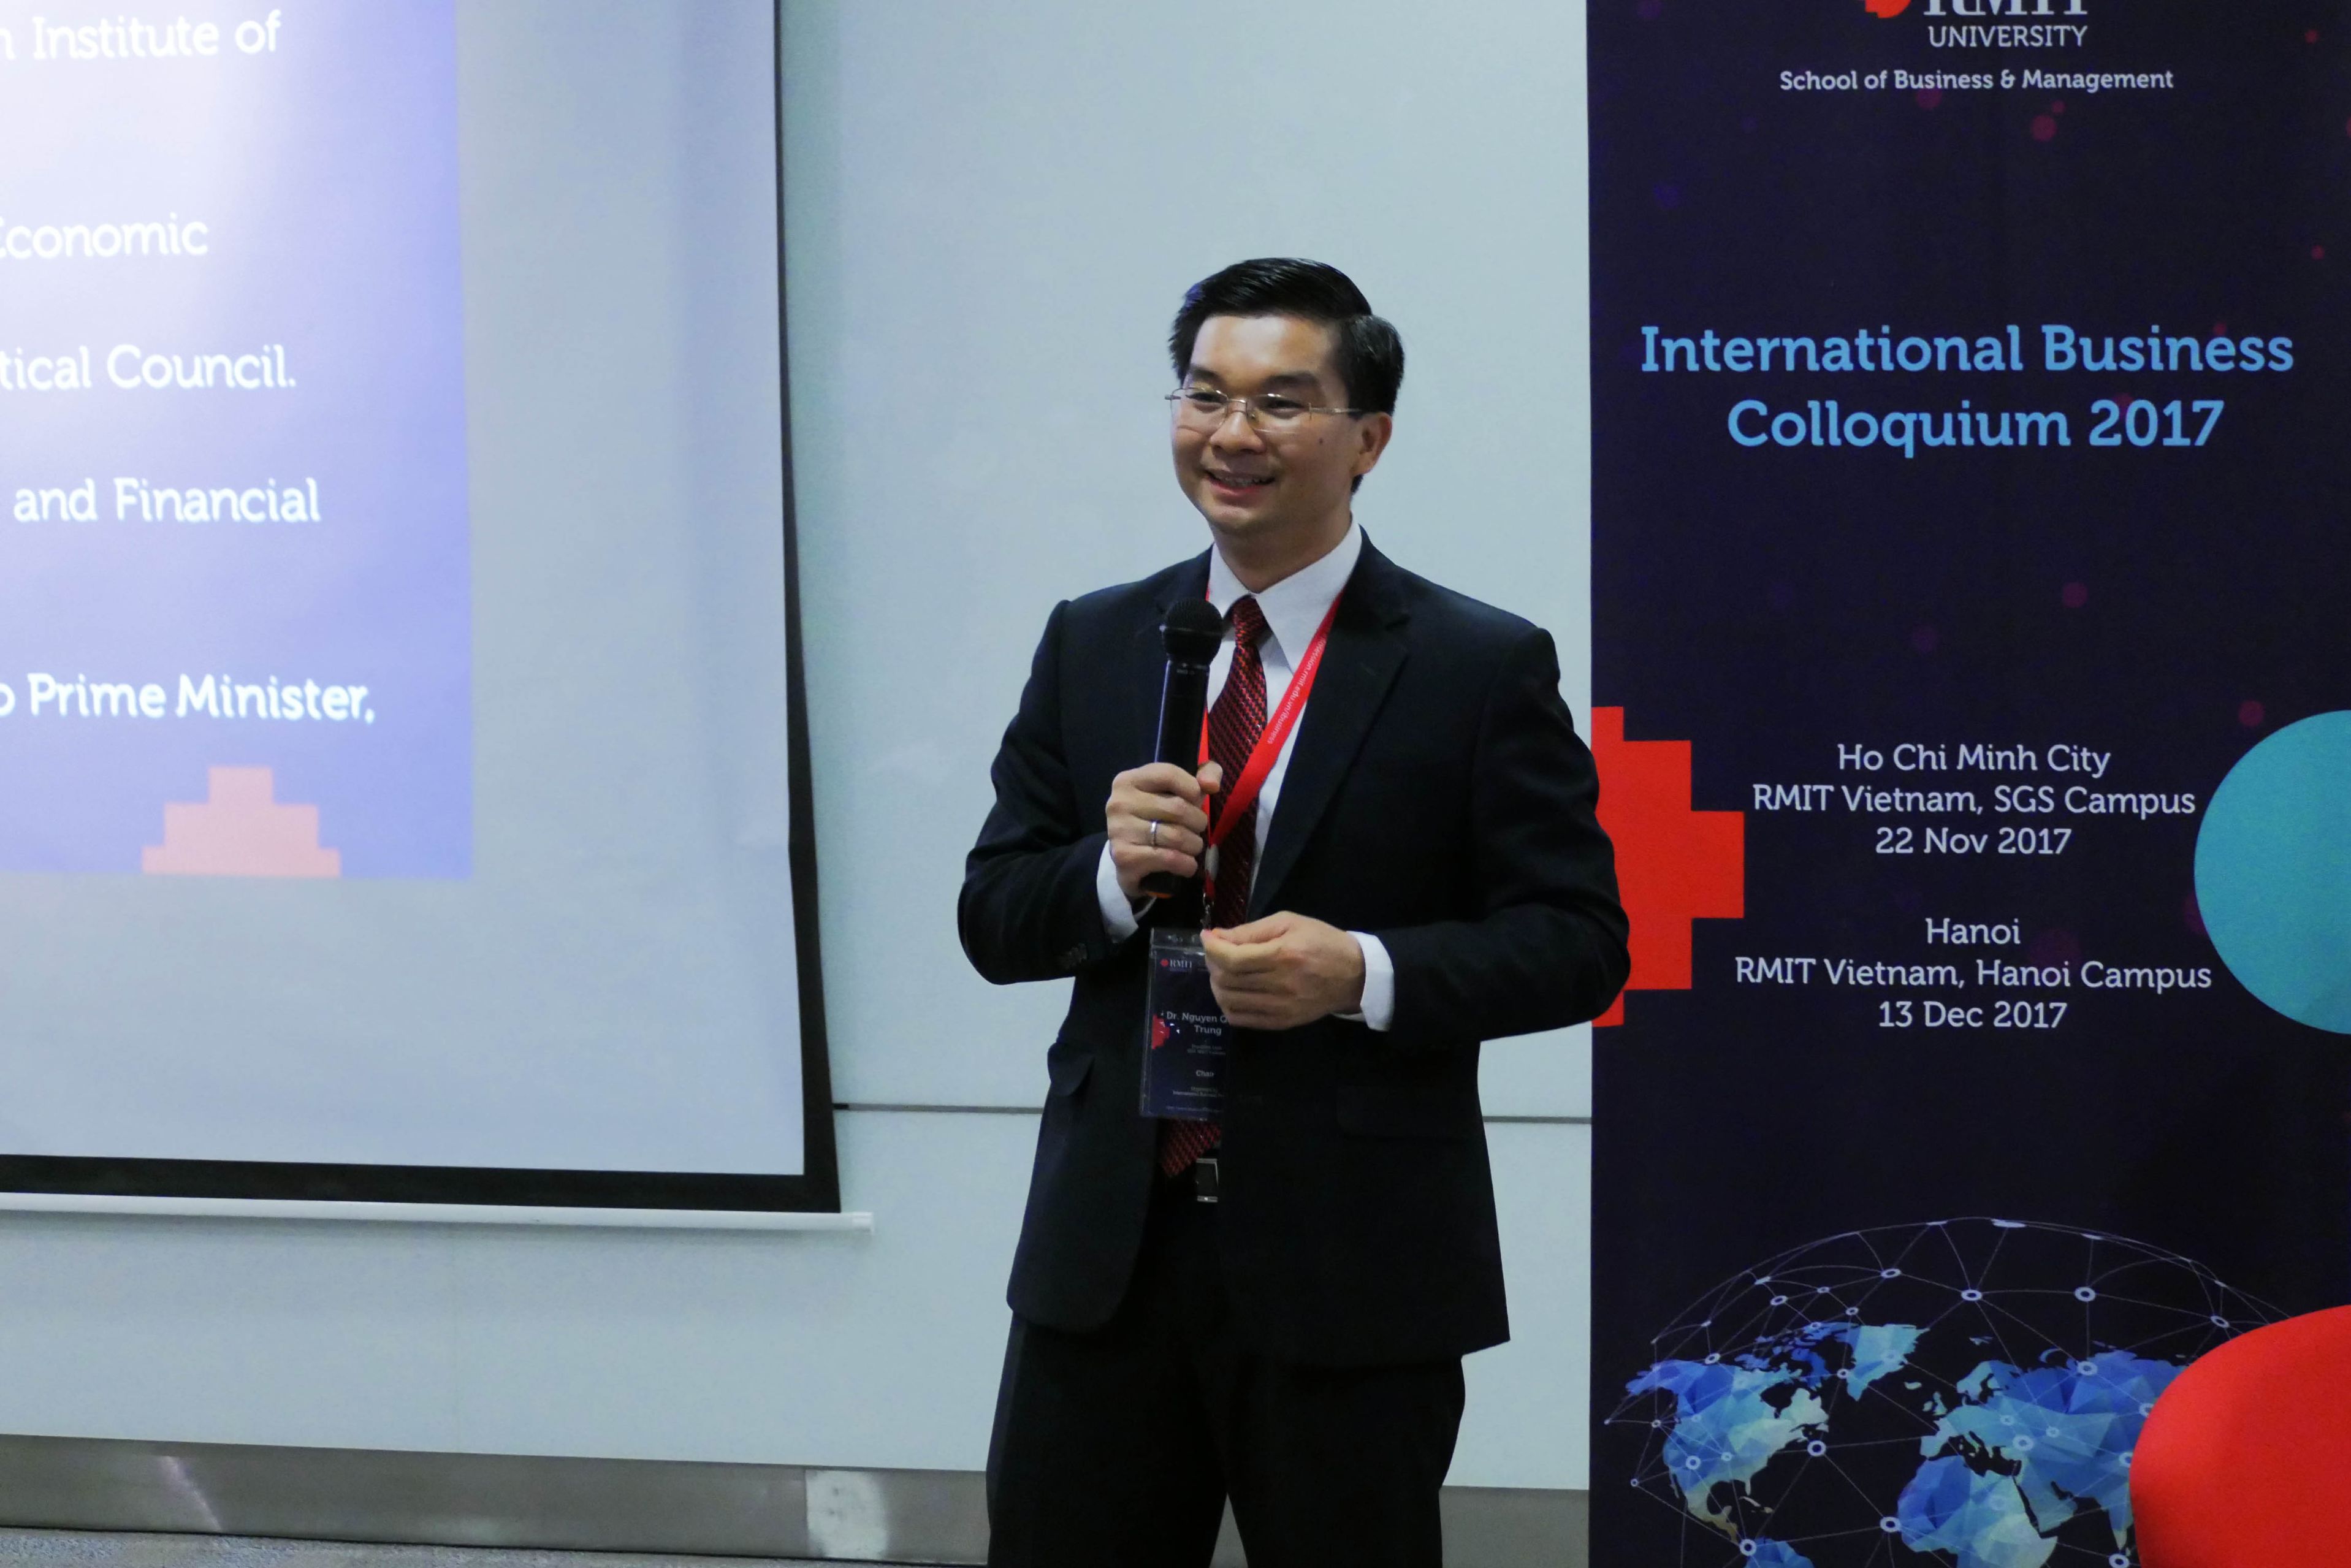 Trưởng Bộ môn Kinh doanh Quốc tế Tiến sĩ Nguyễn Quang Trung trình bày tại hội thảo Môi trường kinh doanh quốc tế tại Việt Nam